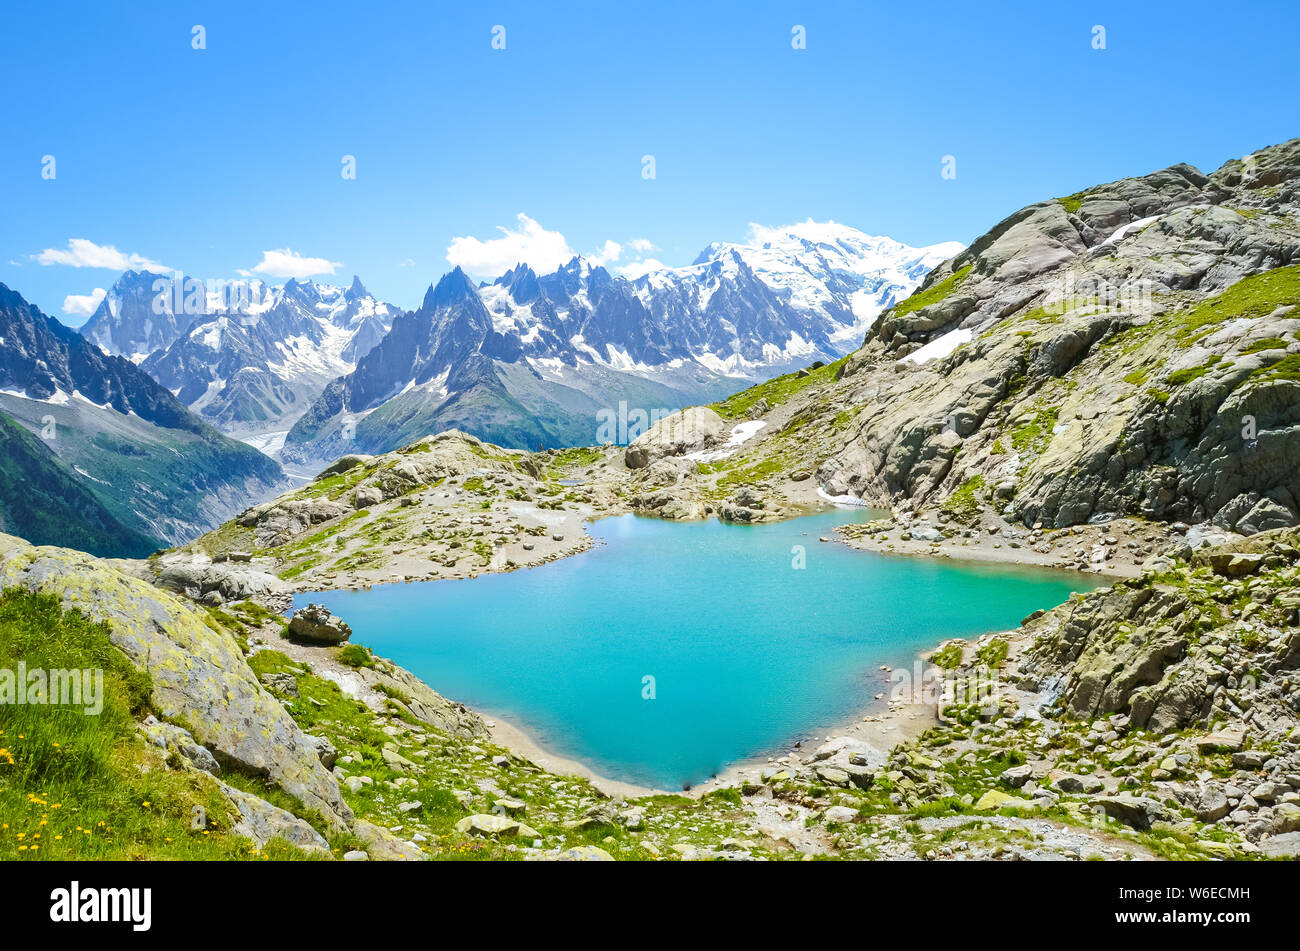 Die schöne Landschaft der Französischen Alpen. Türkis See Blanc, in Französisch Lac Blanc fotografiert an einem sonnigen Sommertag mit Mont Blanc und anderen Bergen im Hintergrund. Atemberaubende Natur, Frankreich. Stockfoto